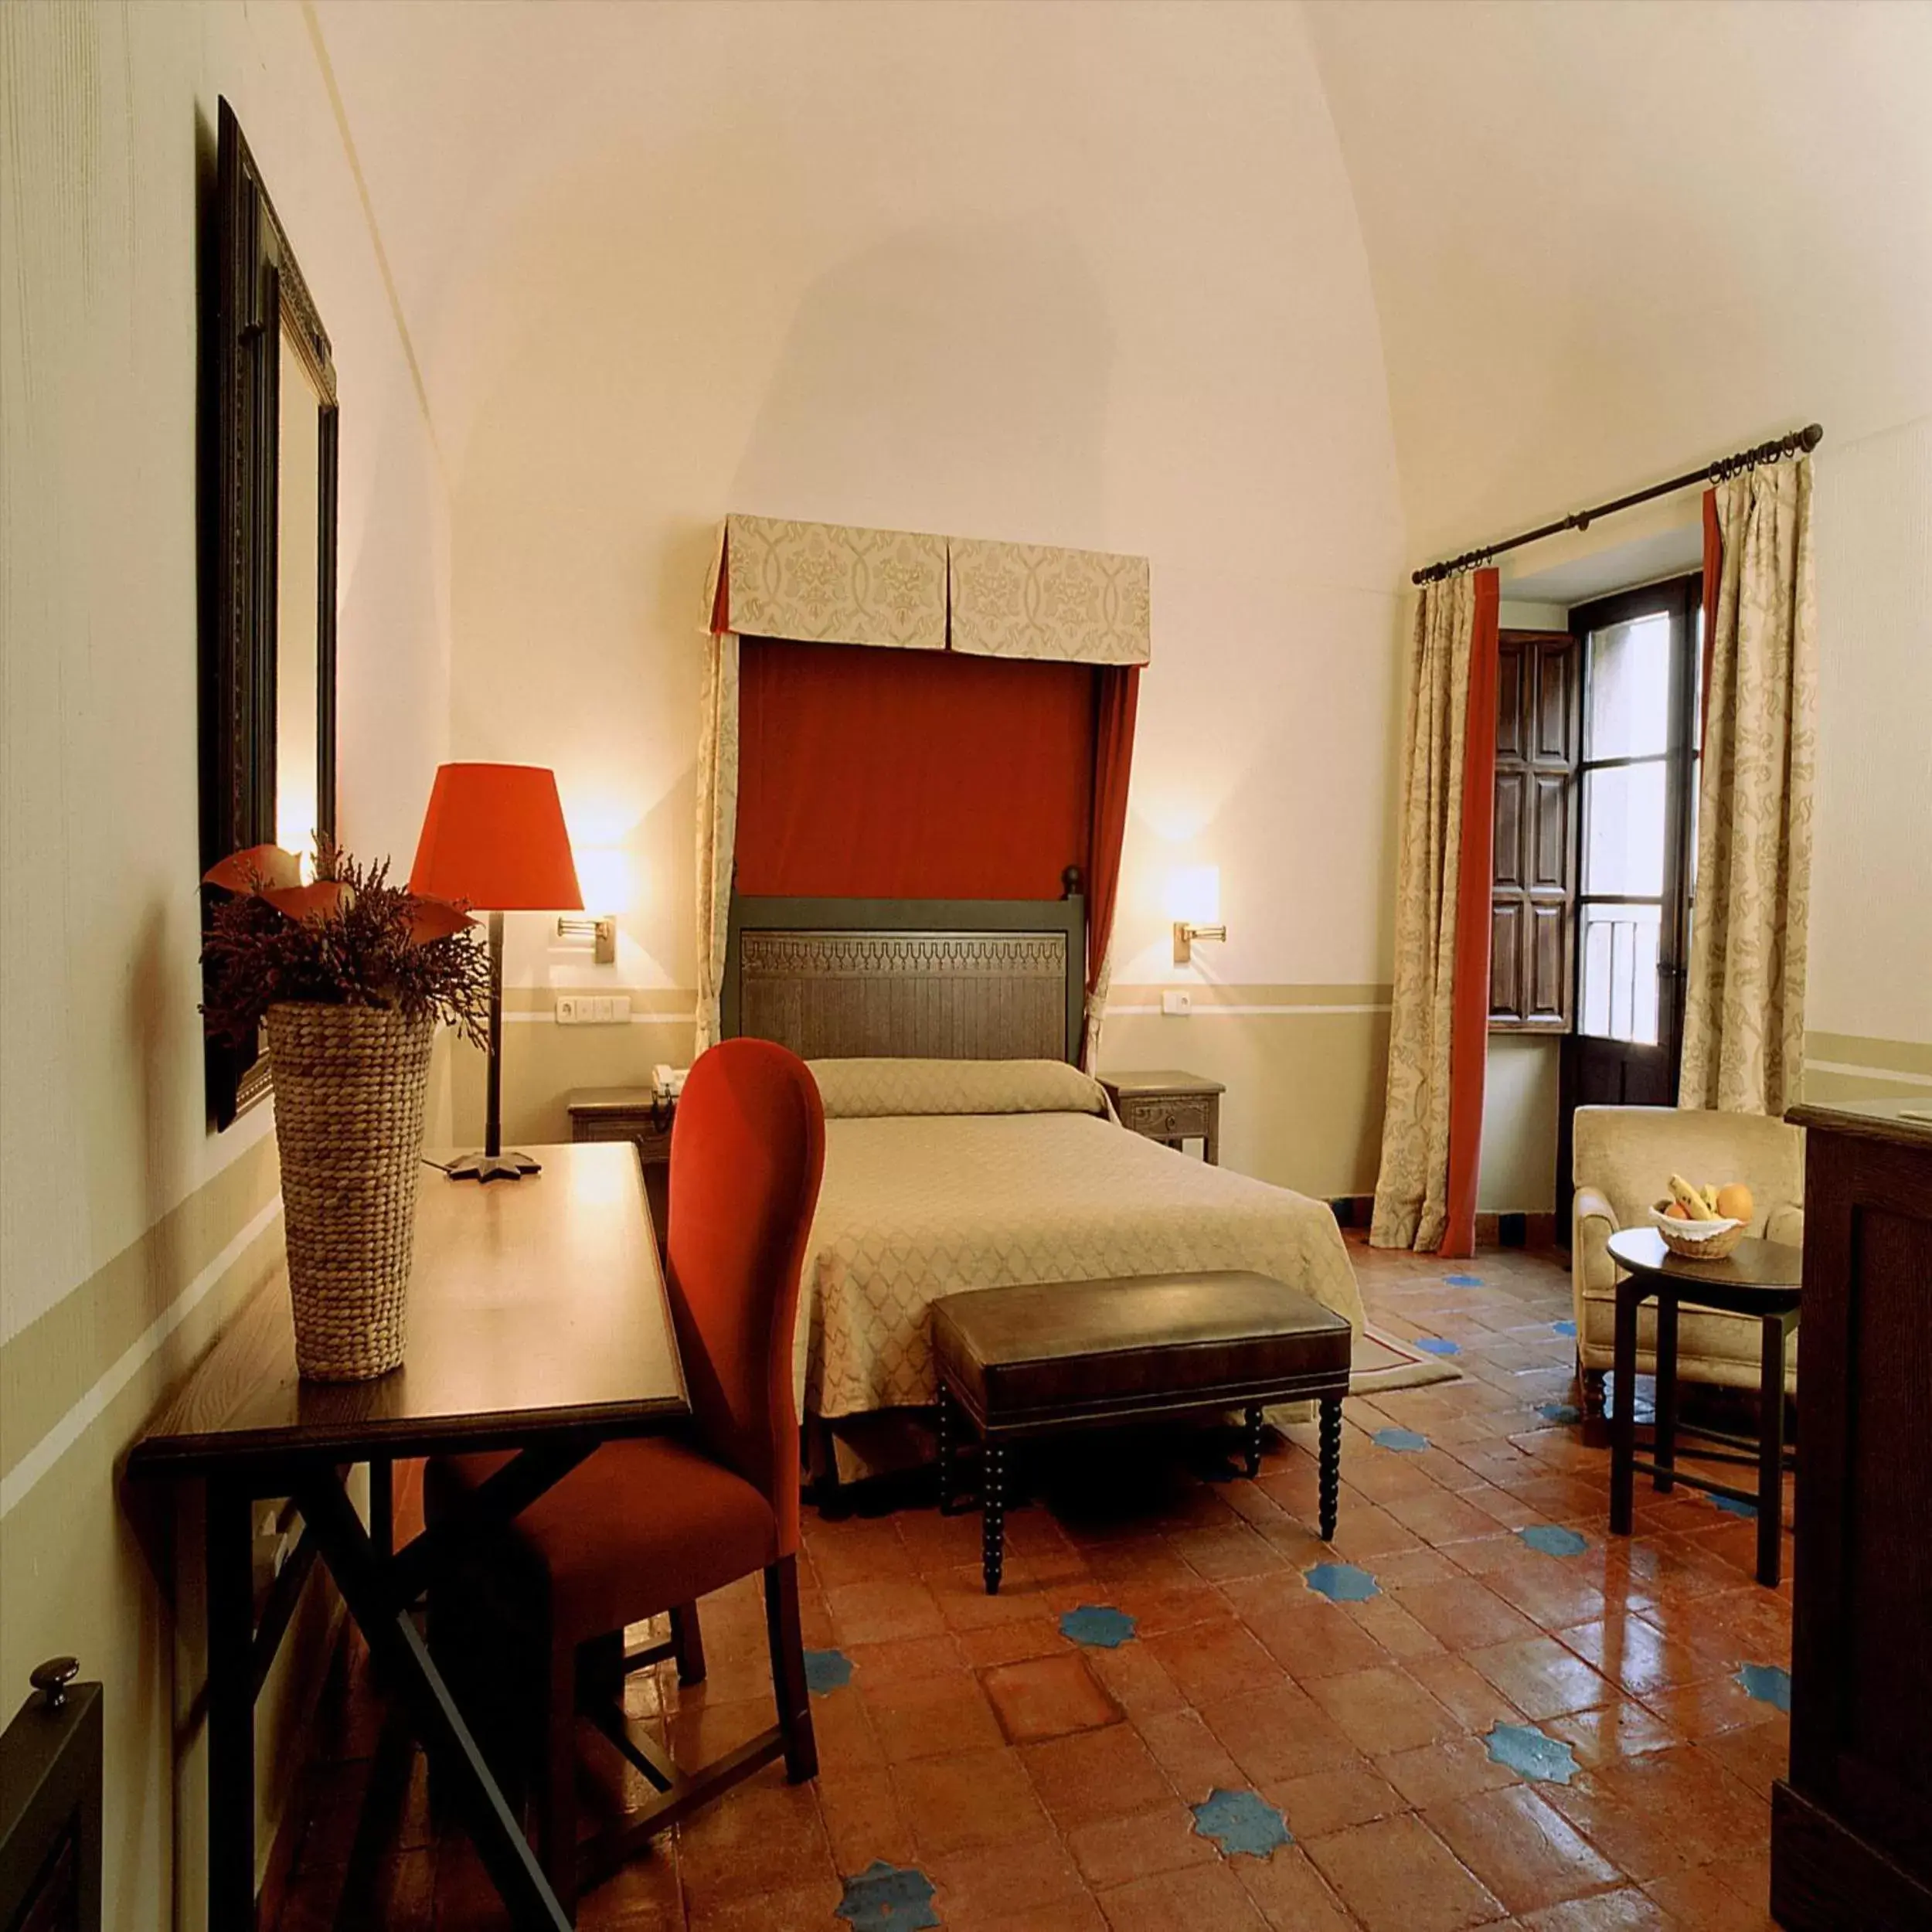 Bedroom in Parador de Oropesa